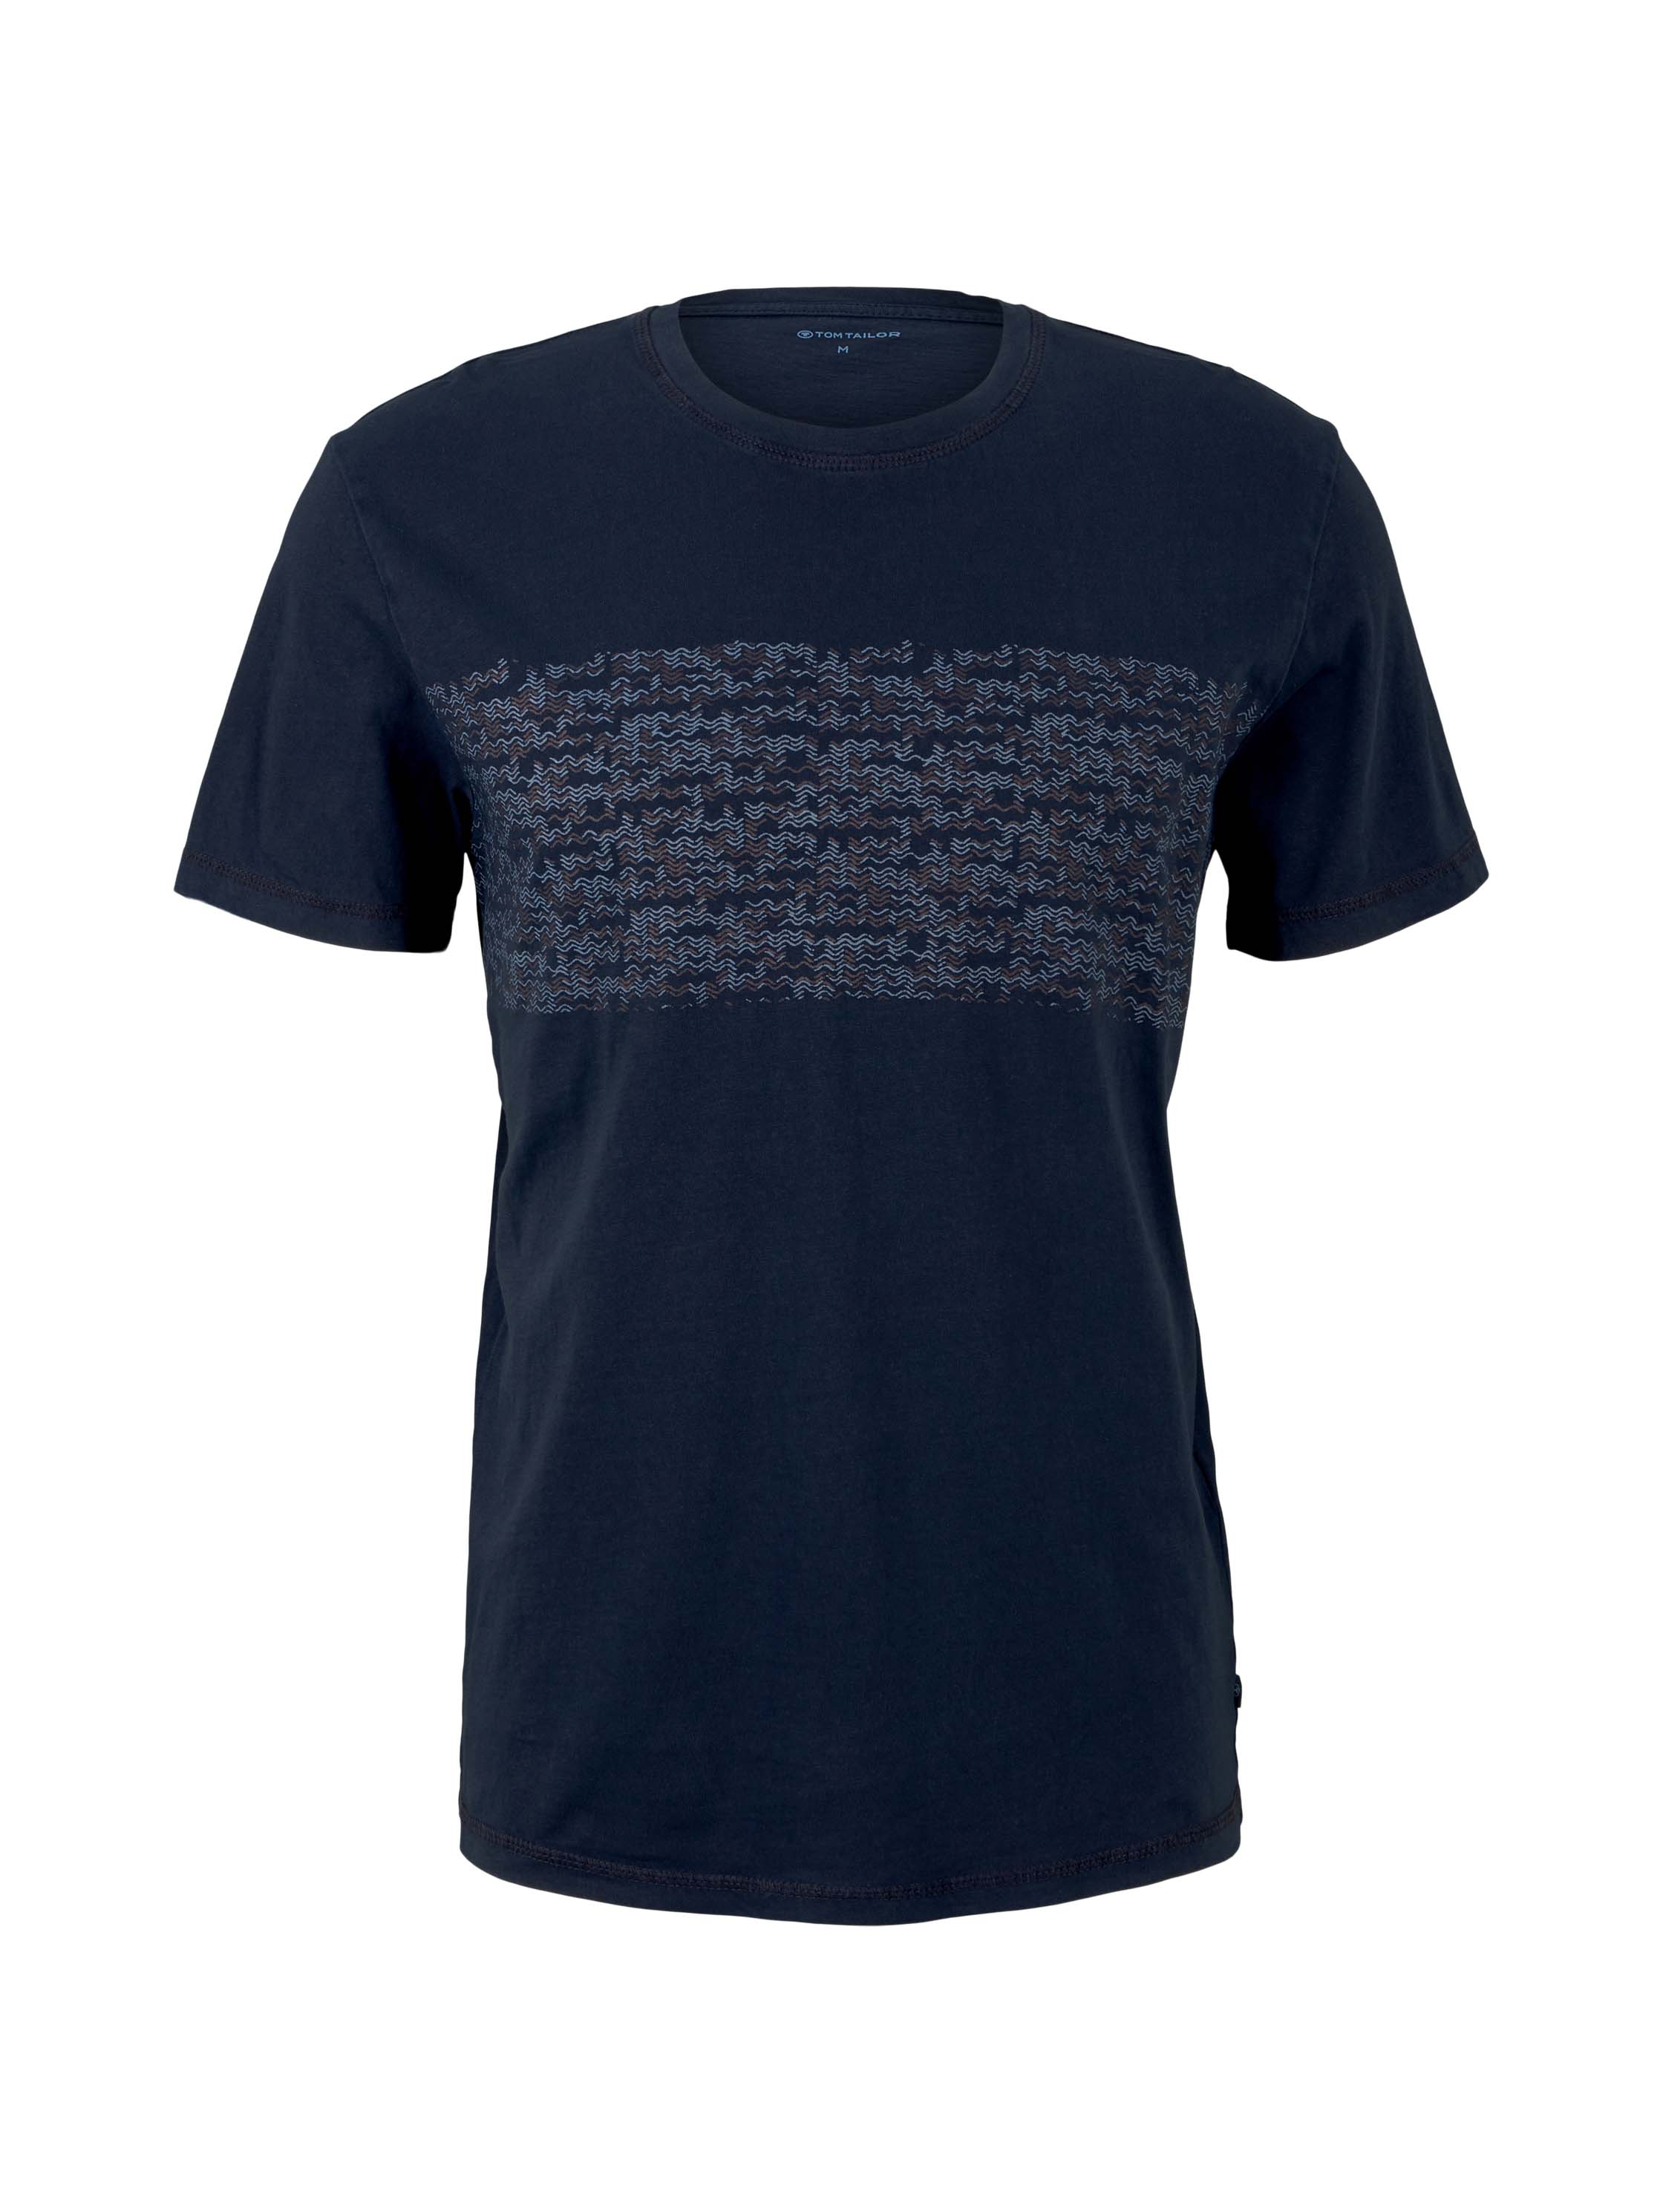 Koszulki Odzież TOM TAILOR Koszulka w kolorze Ciemny Niebieski, Jasnoniebieskim 